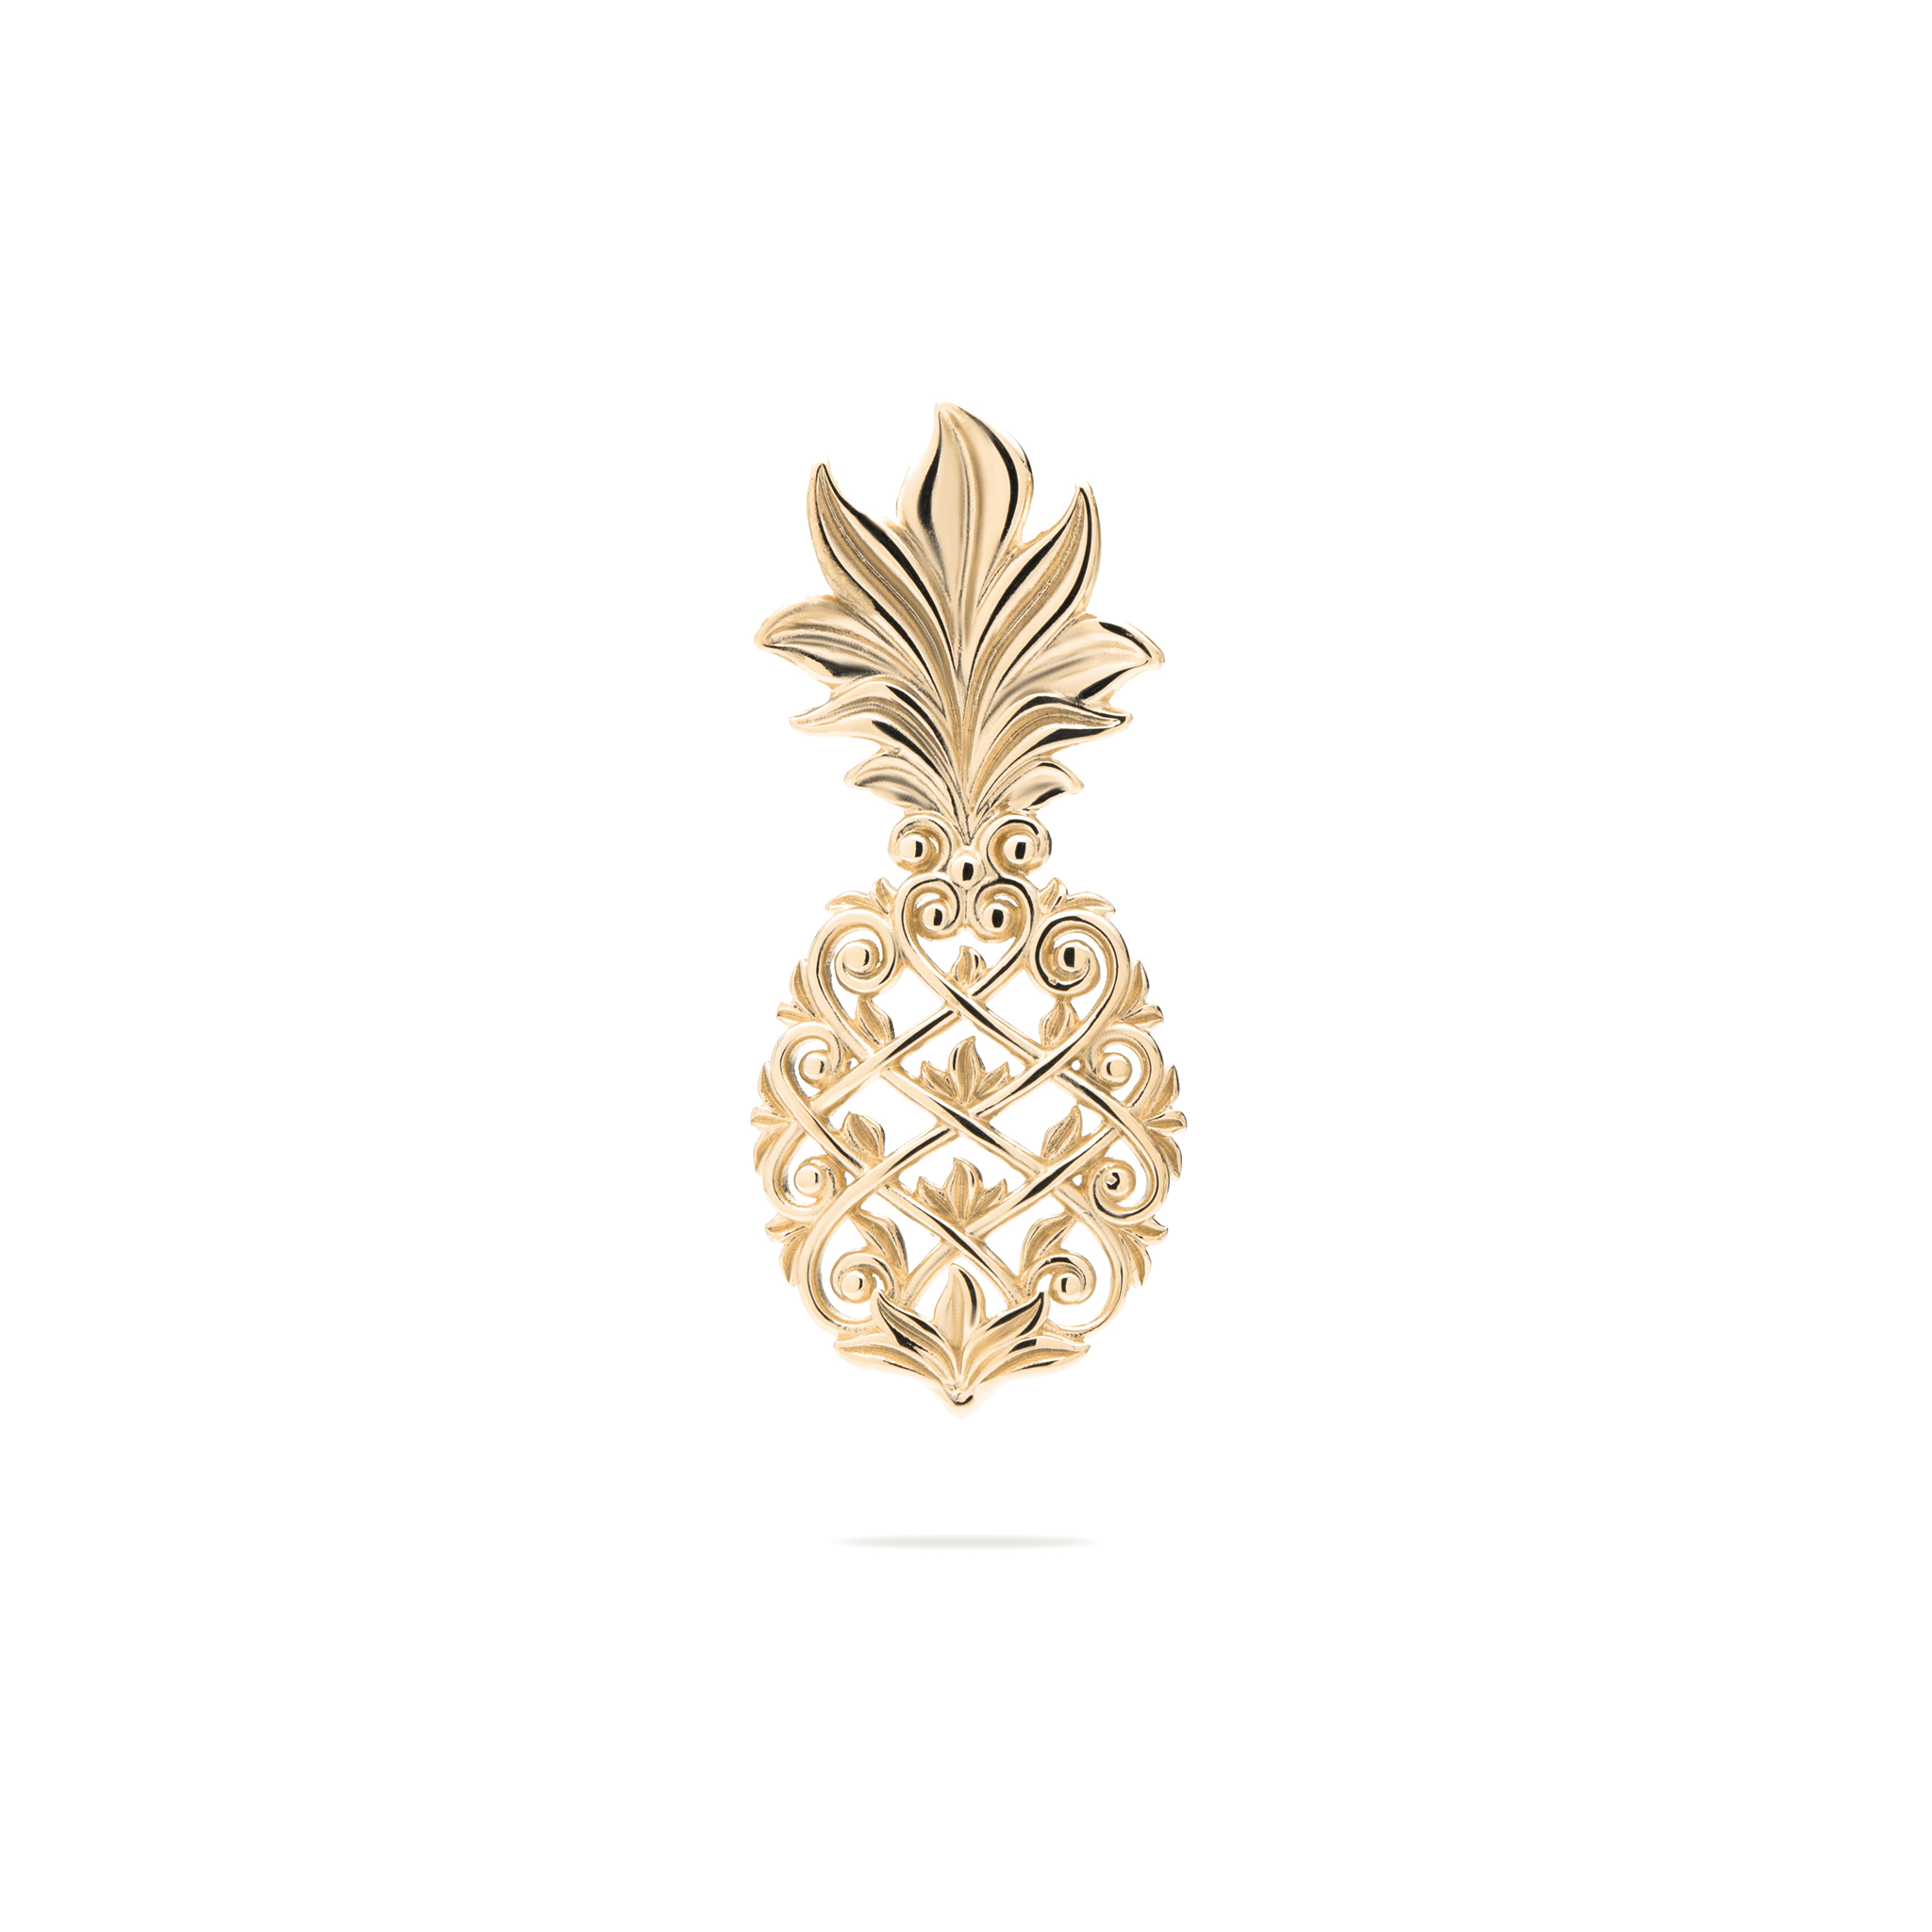 Living Heirloom Pineapple Pendant in Gold - 30mm